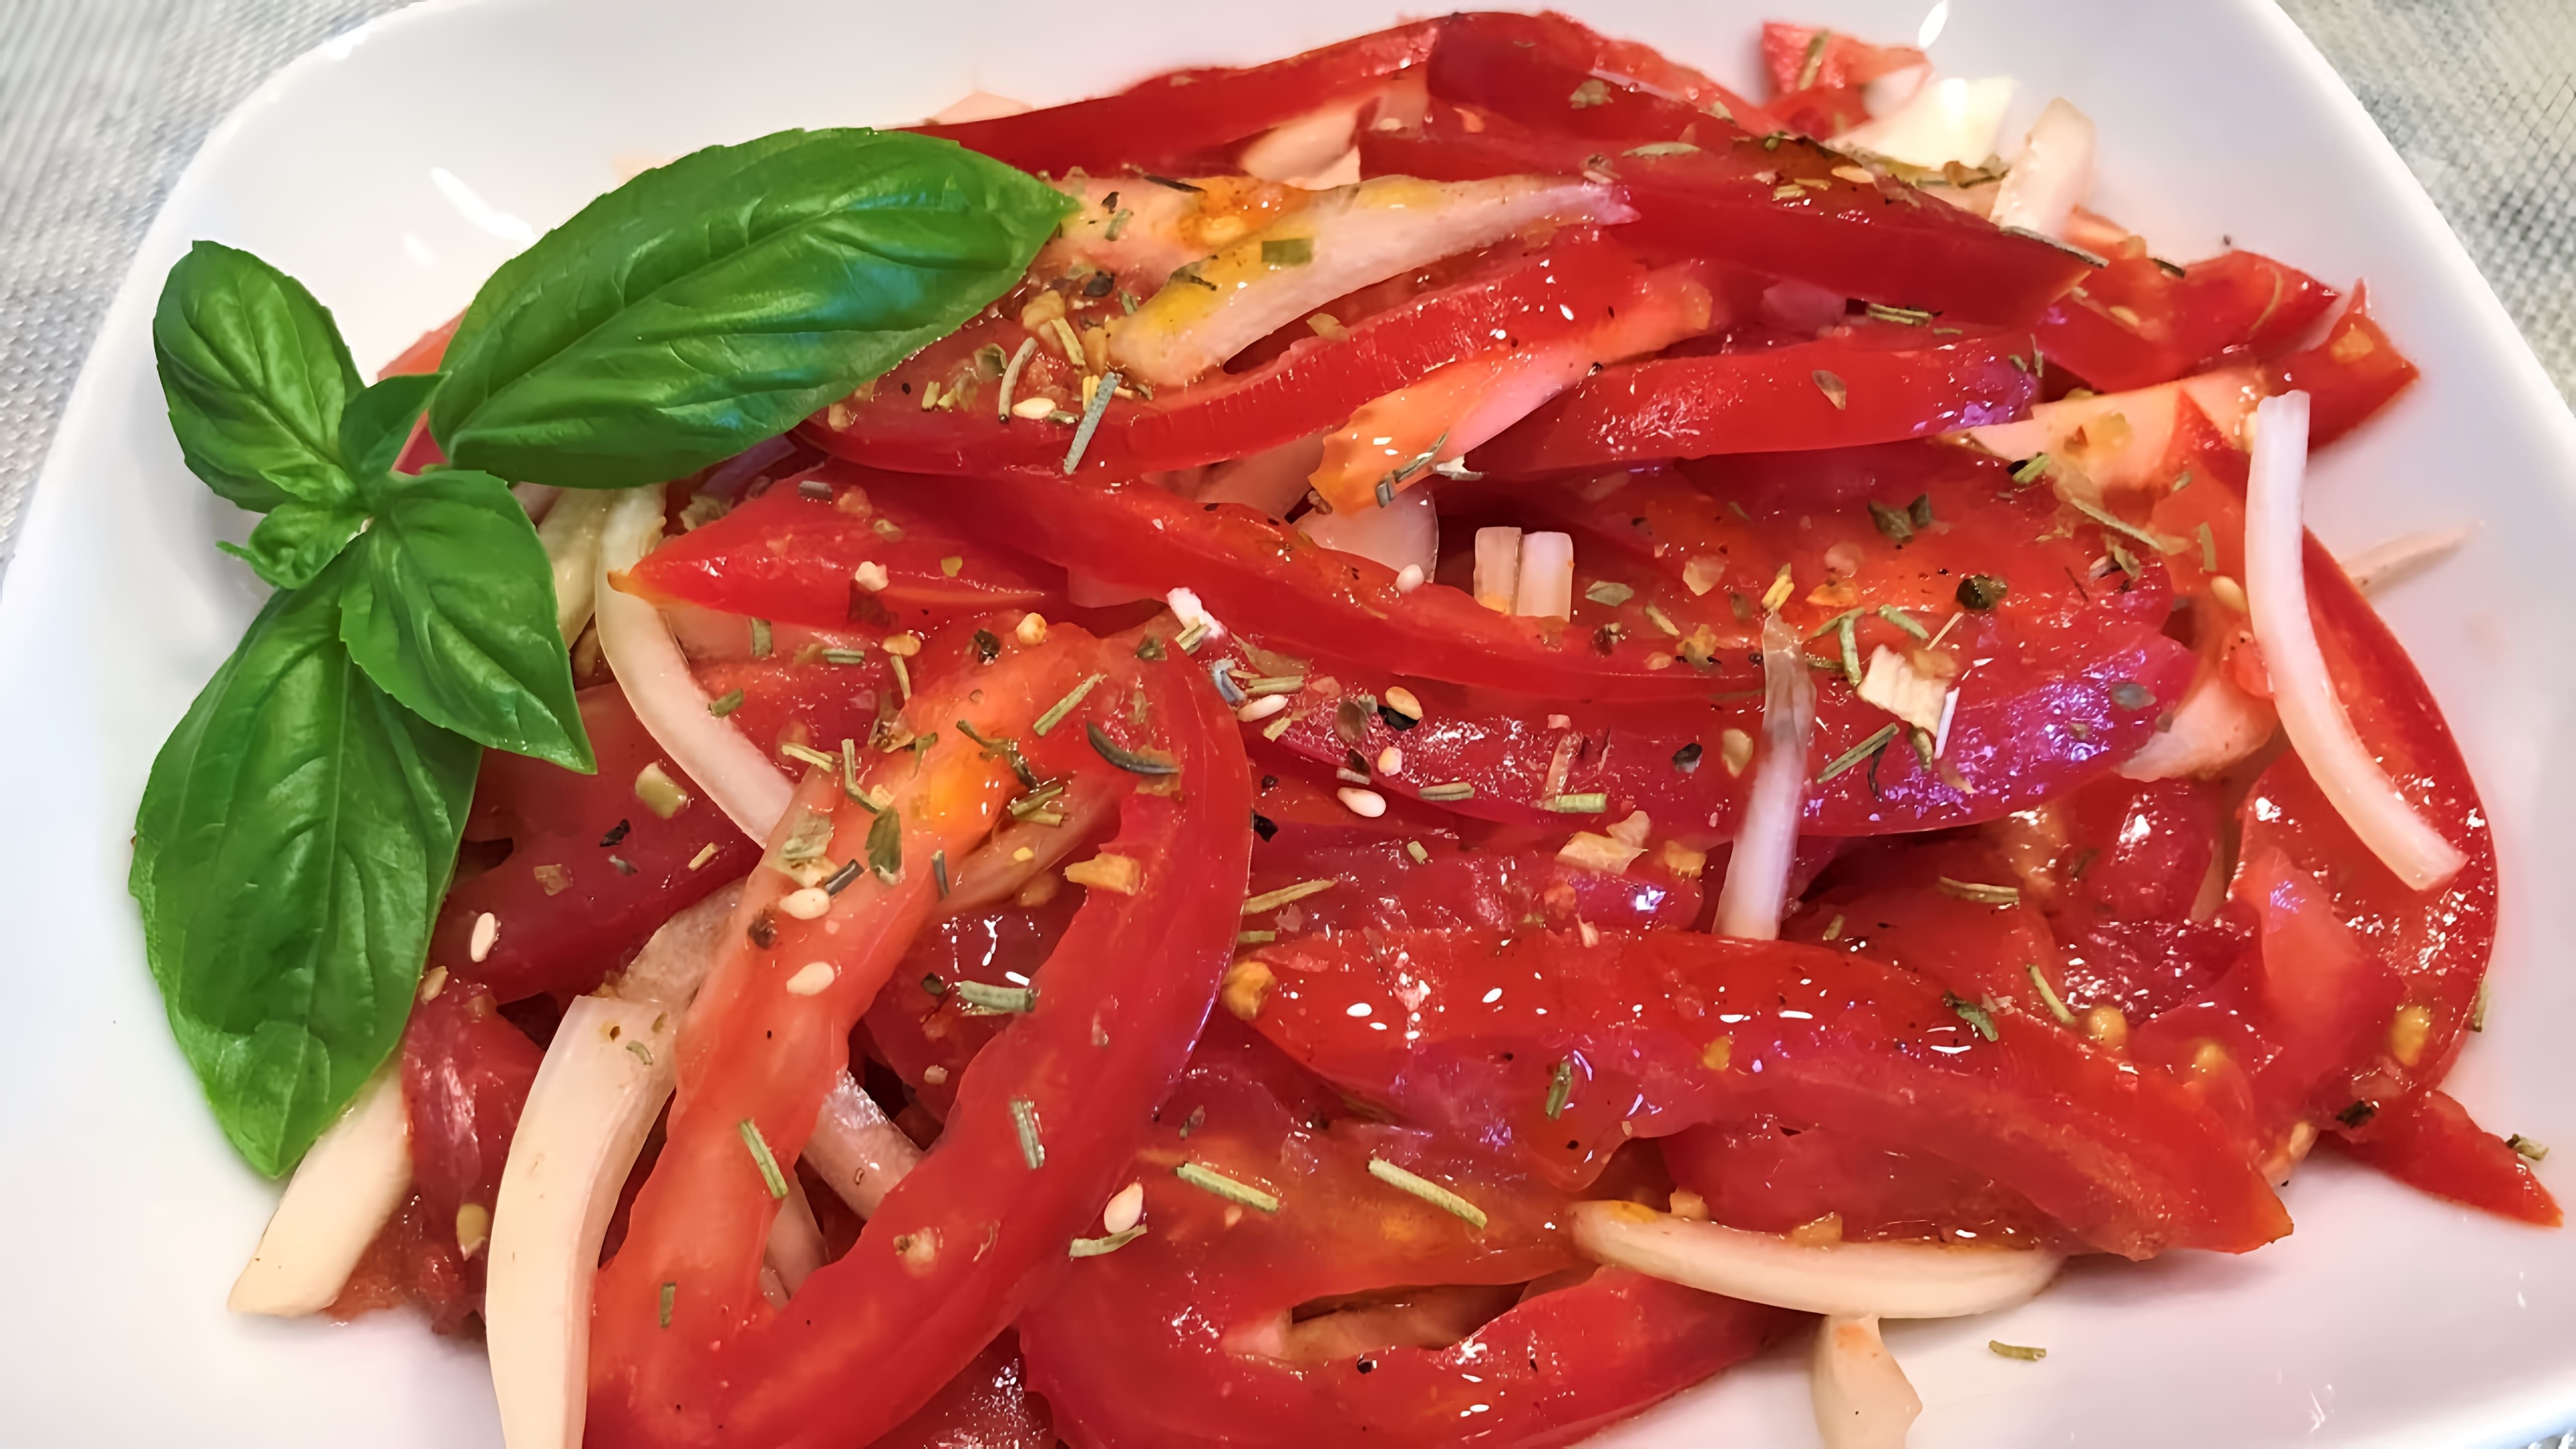 В этом видео демонстрируется рецепт приготовления вкусного и простого салата из помидоров